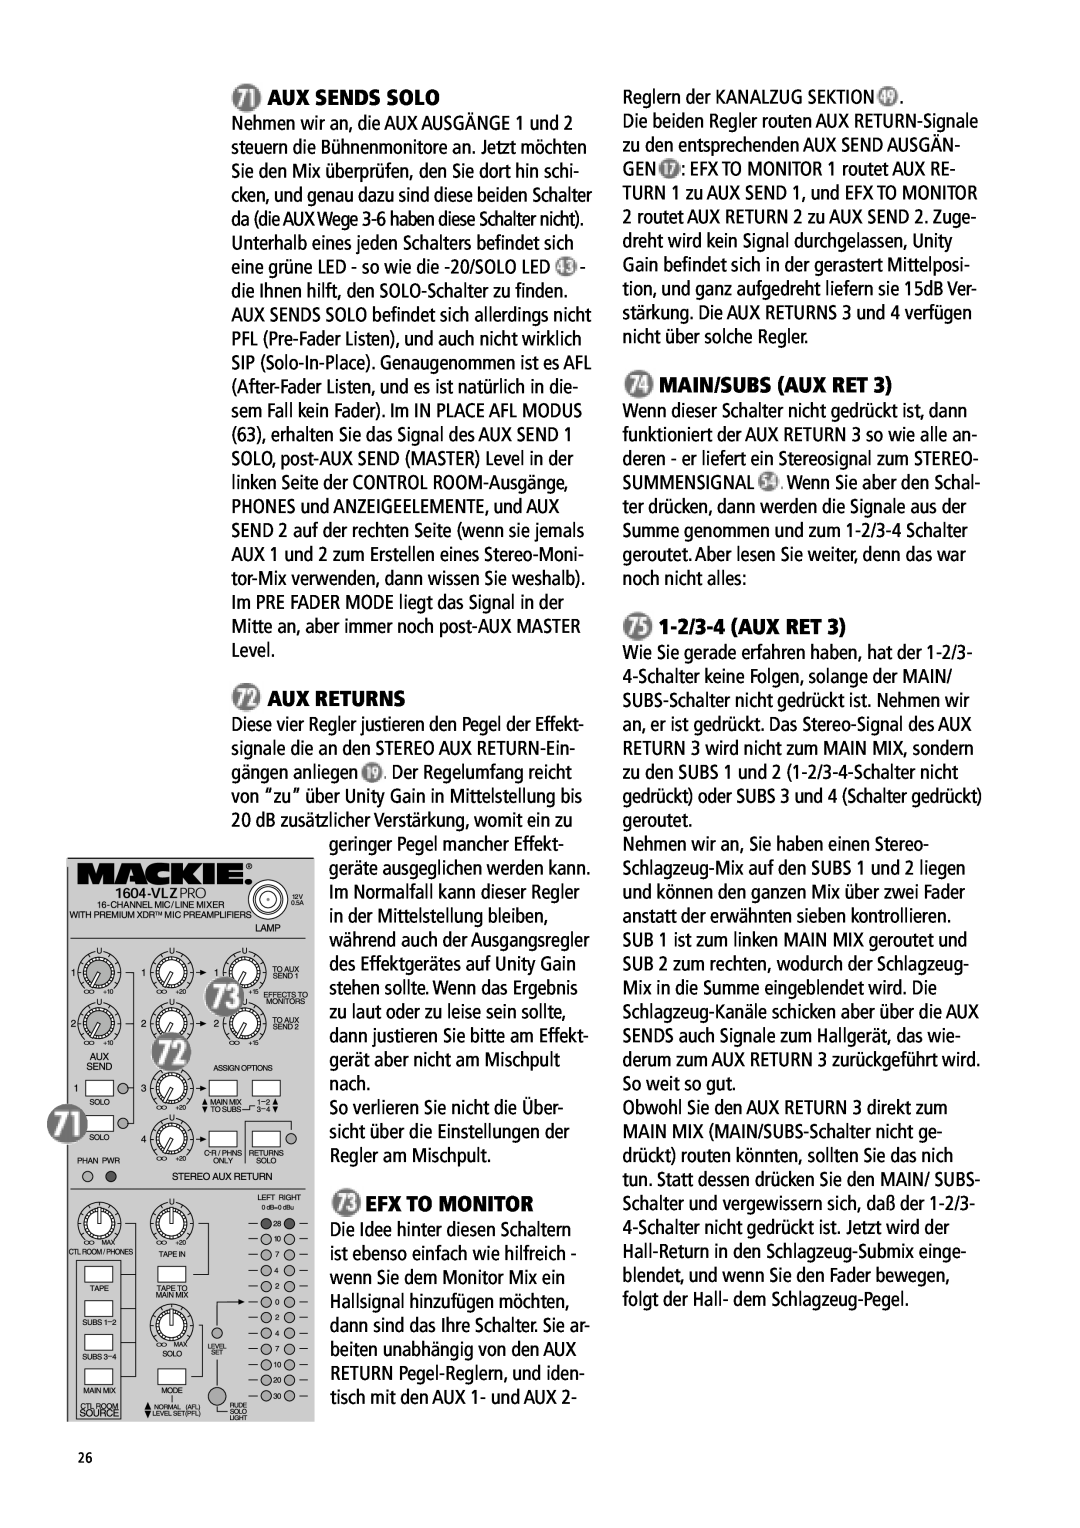 Mackie 1604-VLZ manual Aux Sends Solo, Aux Returns, Efx To Monitor, Main/Subs Aux Ret, 1-2/3-4 AUX RET 